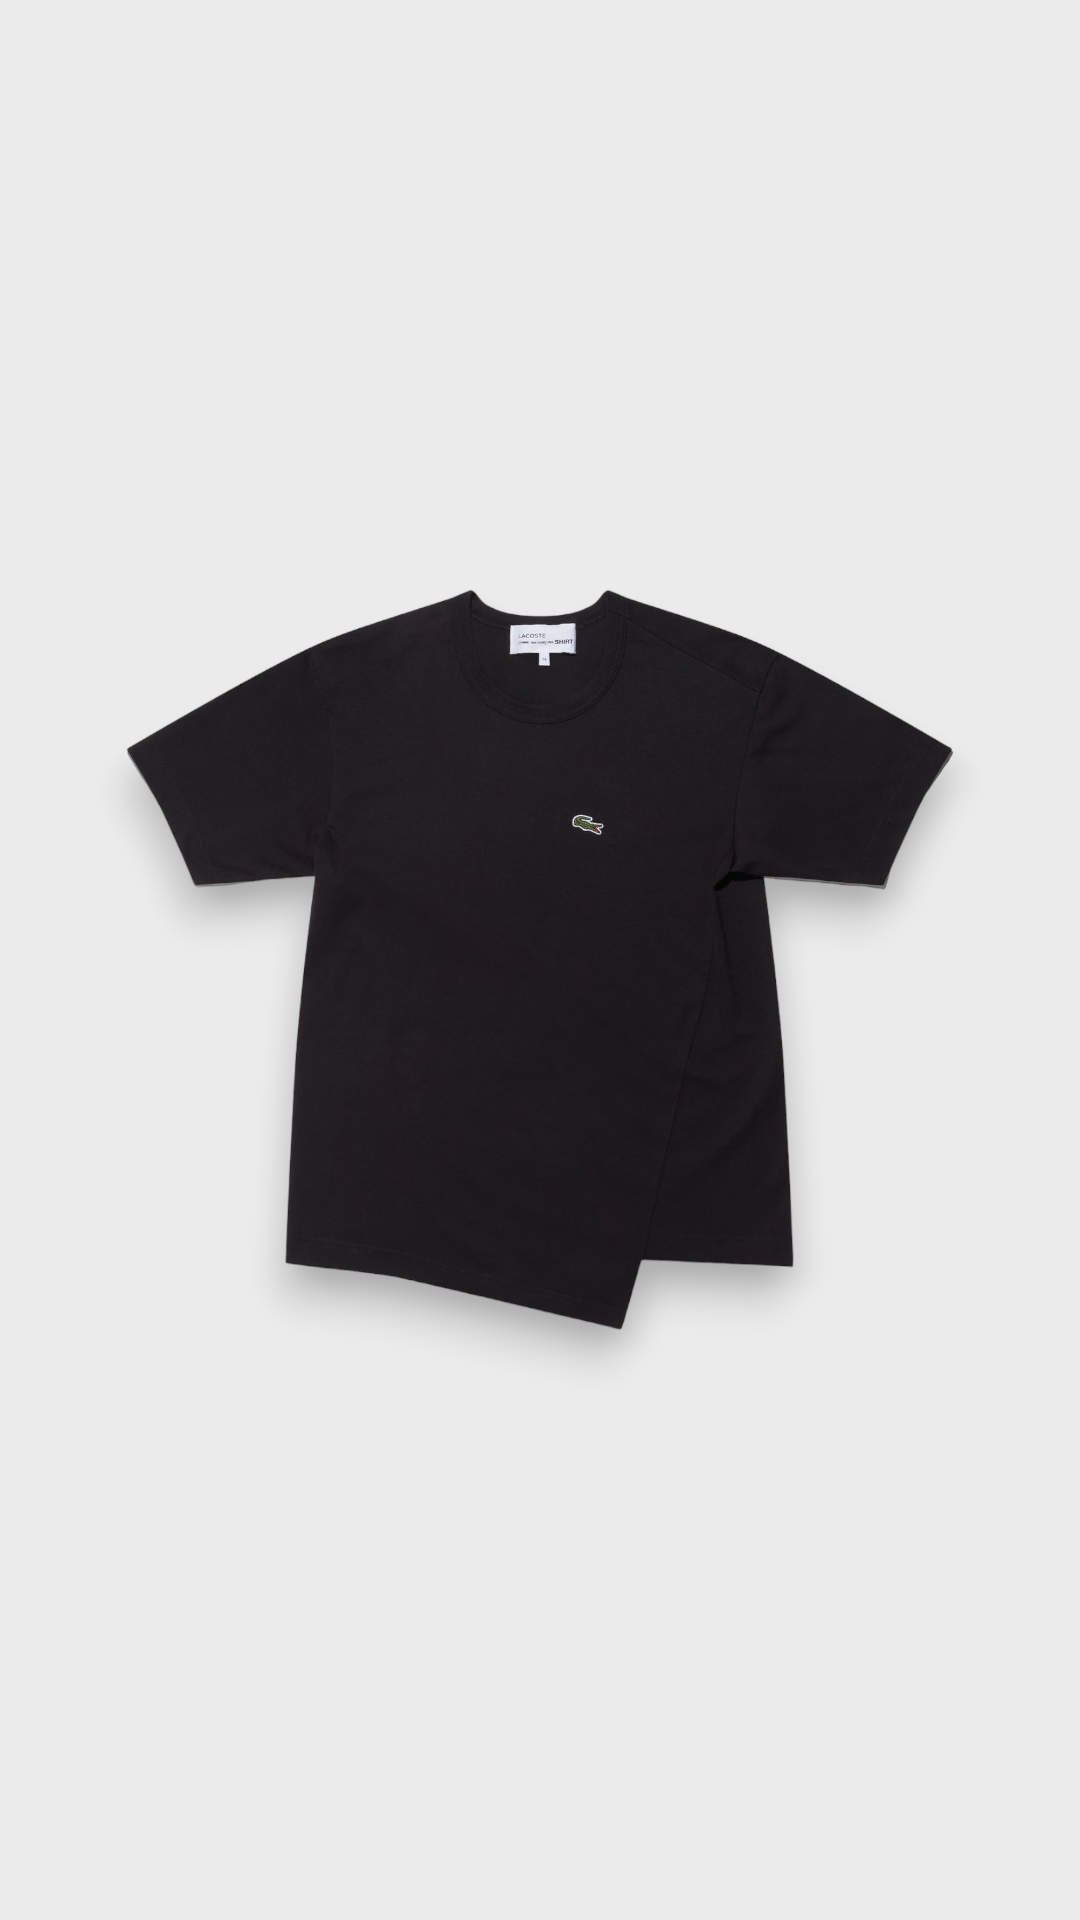 CDG Shirt x Lacoste / Men's T-Shirt